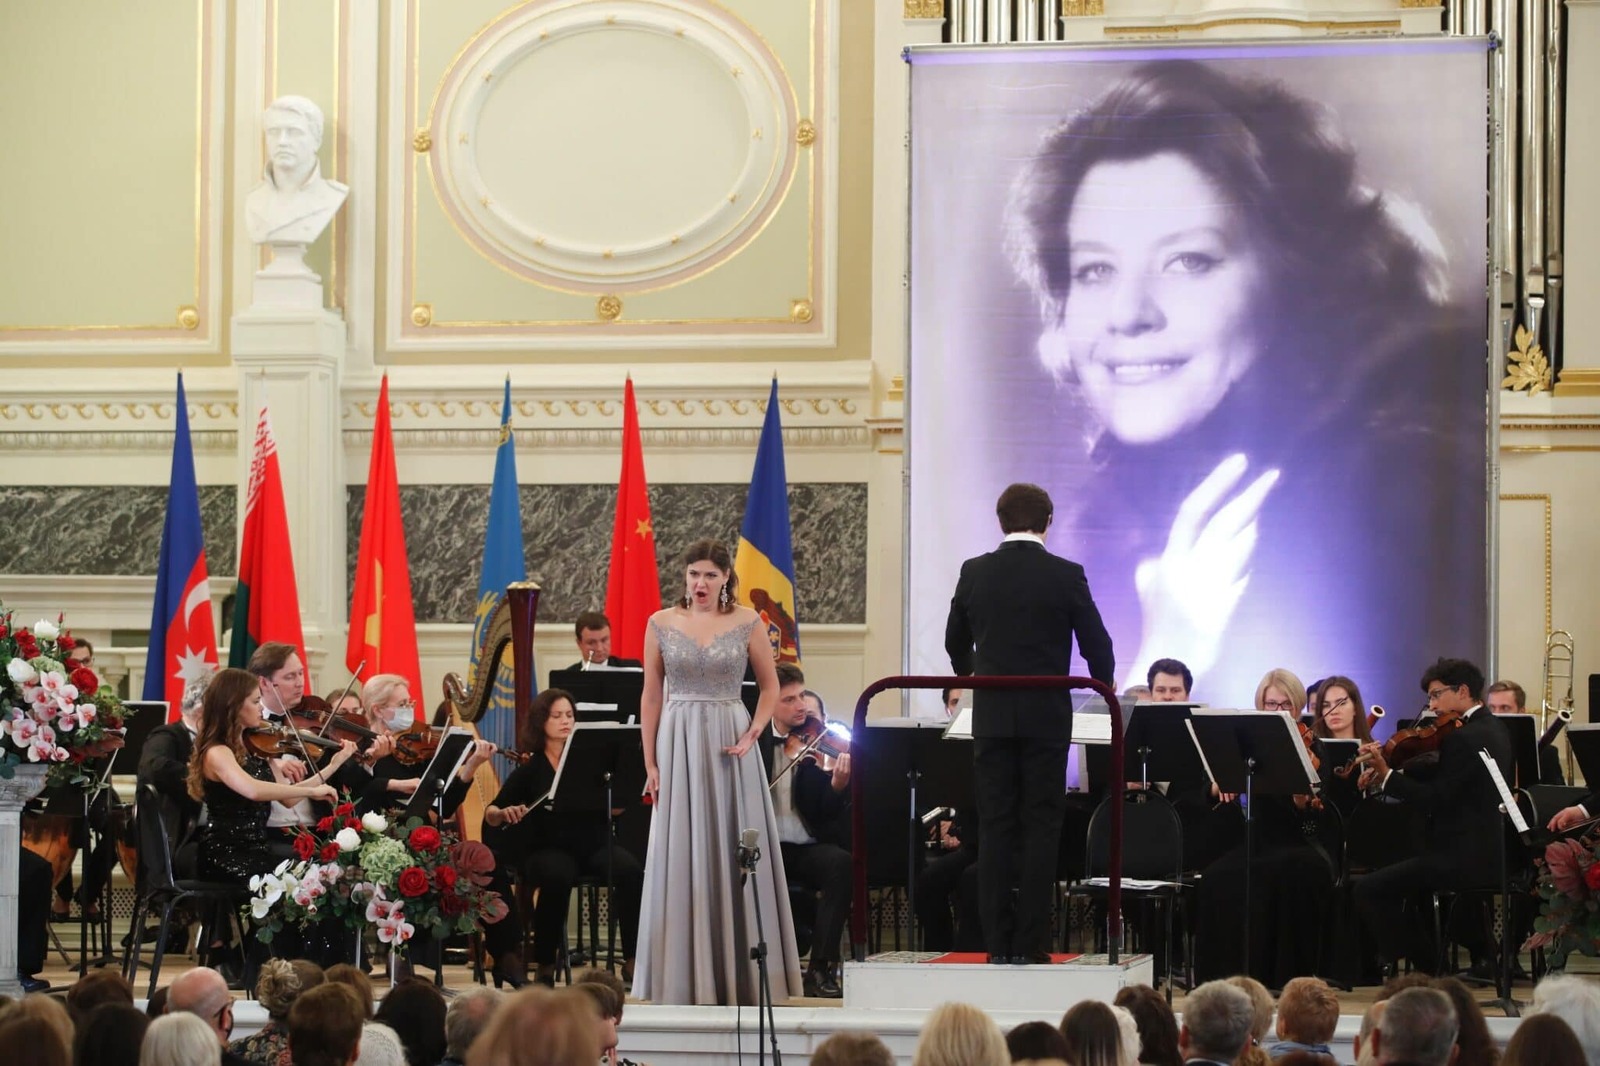 Жюри объявило лауреатов ХIII Международного конкурса молодых оперных певцов Елены Образцовой